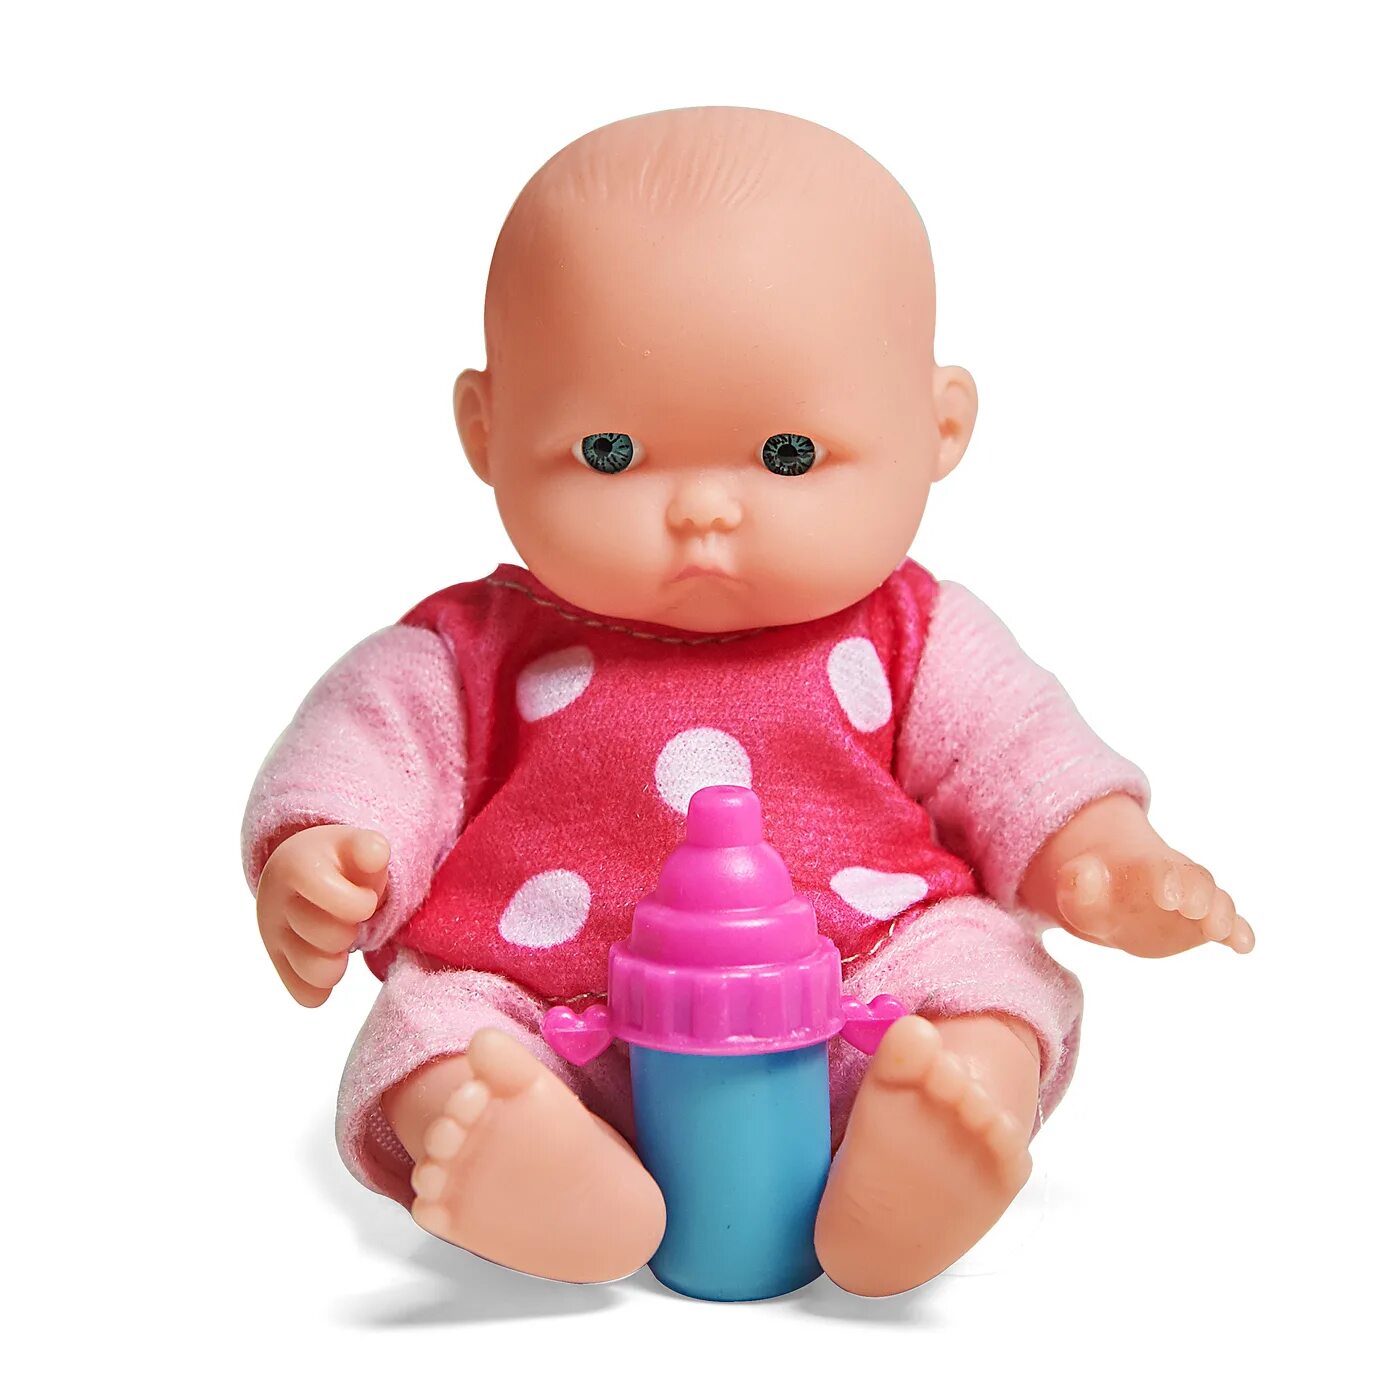 Розовый пупс. Xm636/1 пупс 12.5 см в розовой пижаме ( винилпласт, текстильное волокно). Пупс функциональный 8040-487. Lovely Baby кукла.